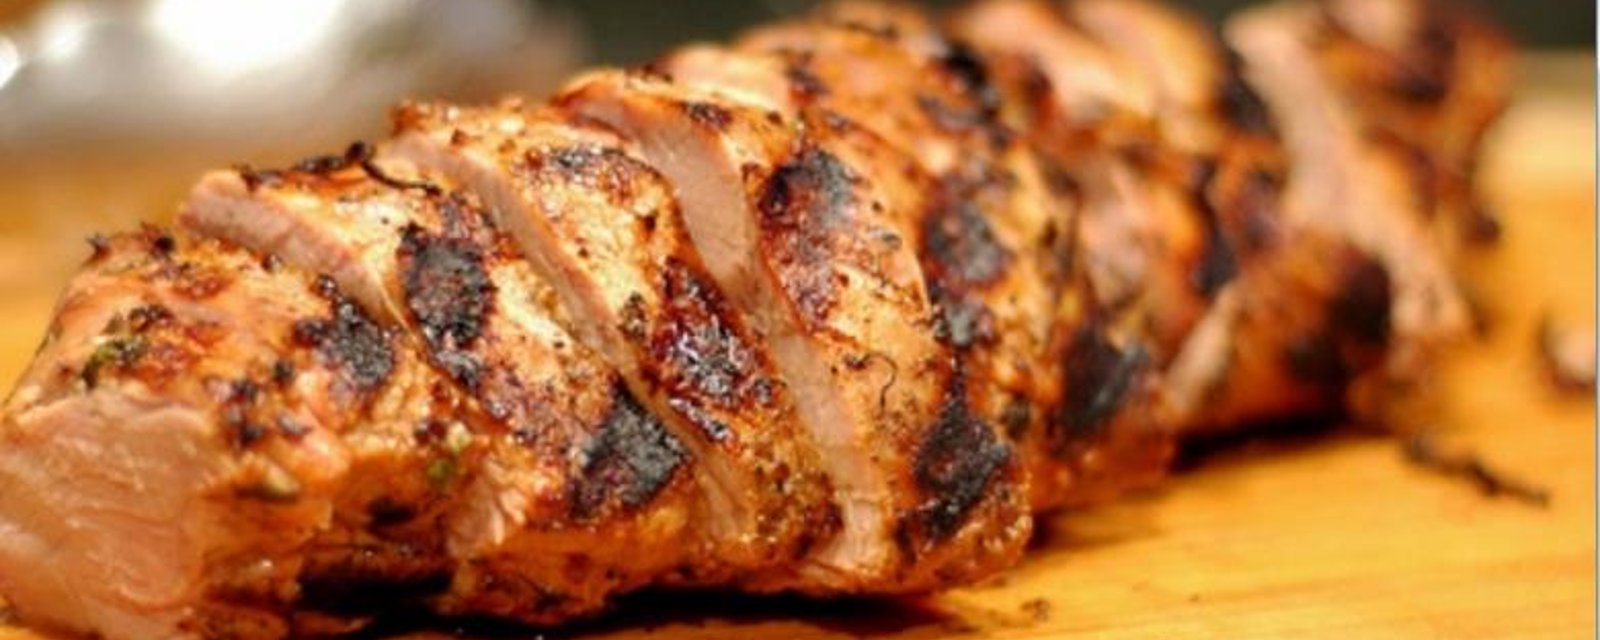 BBQ, le meilleur filet de porc